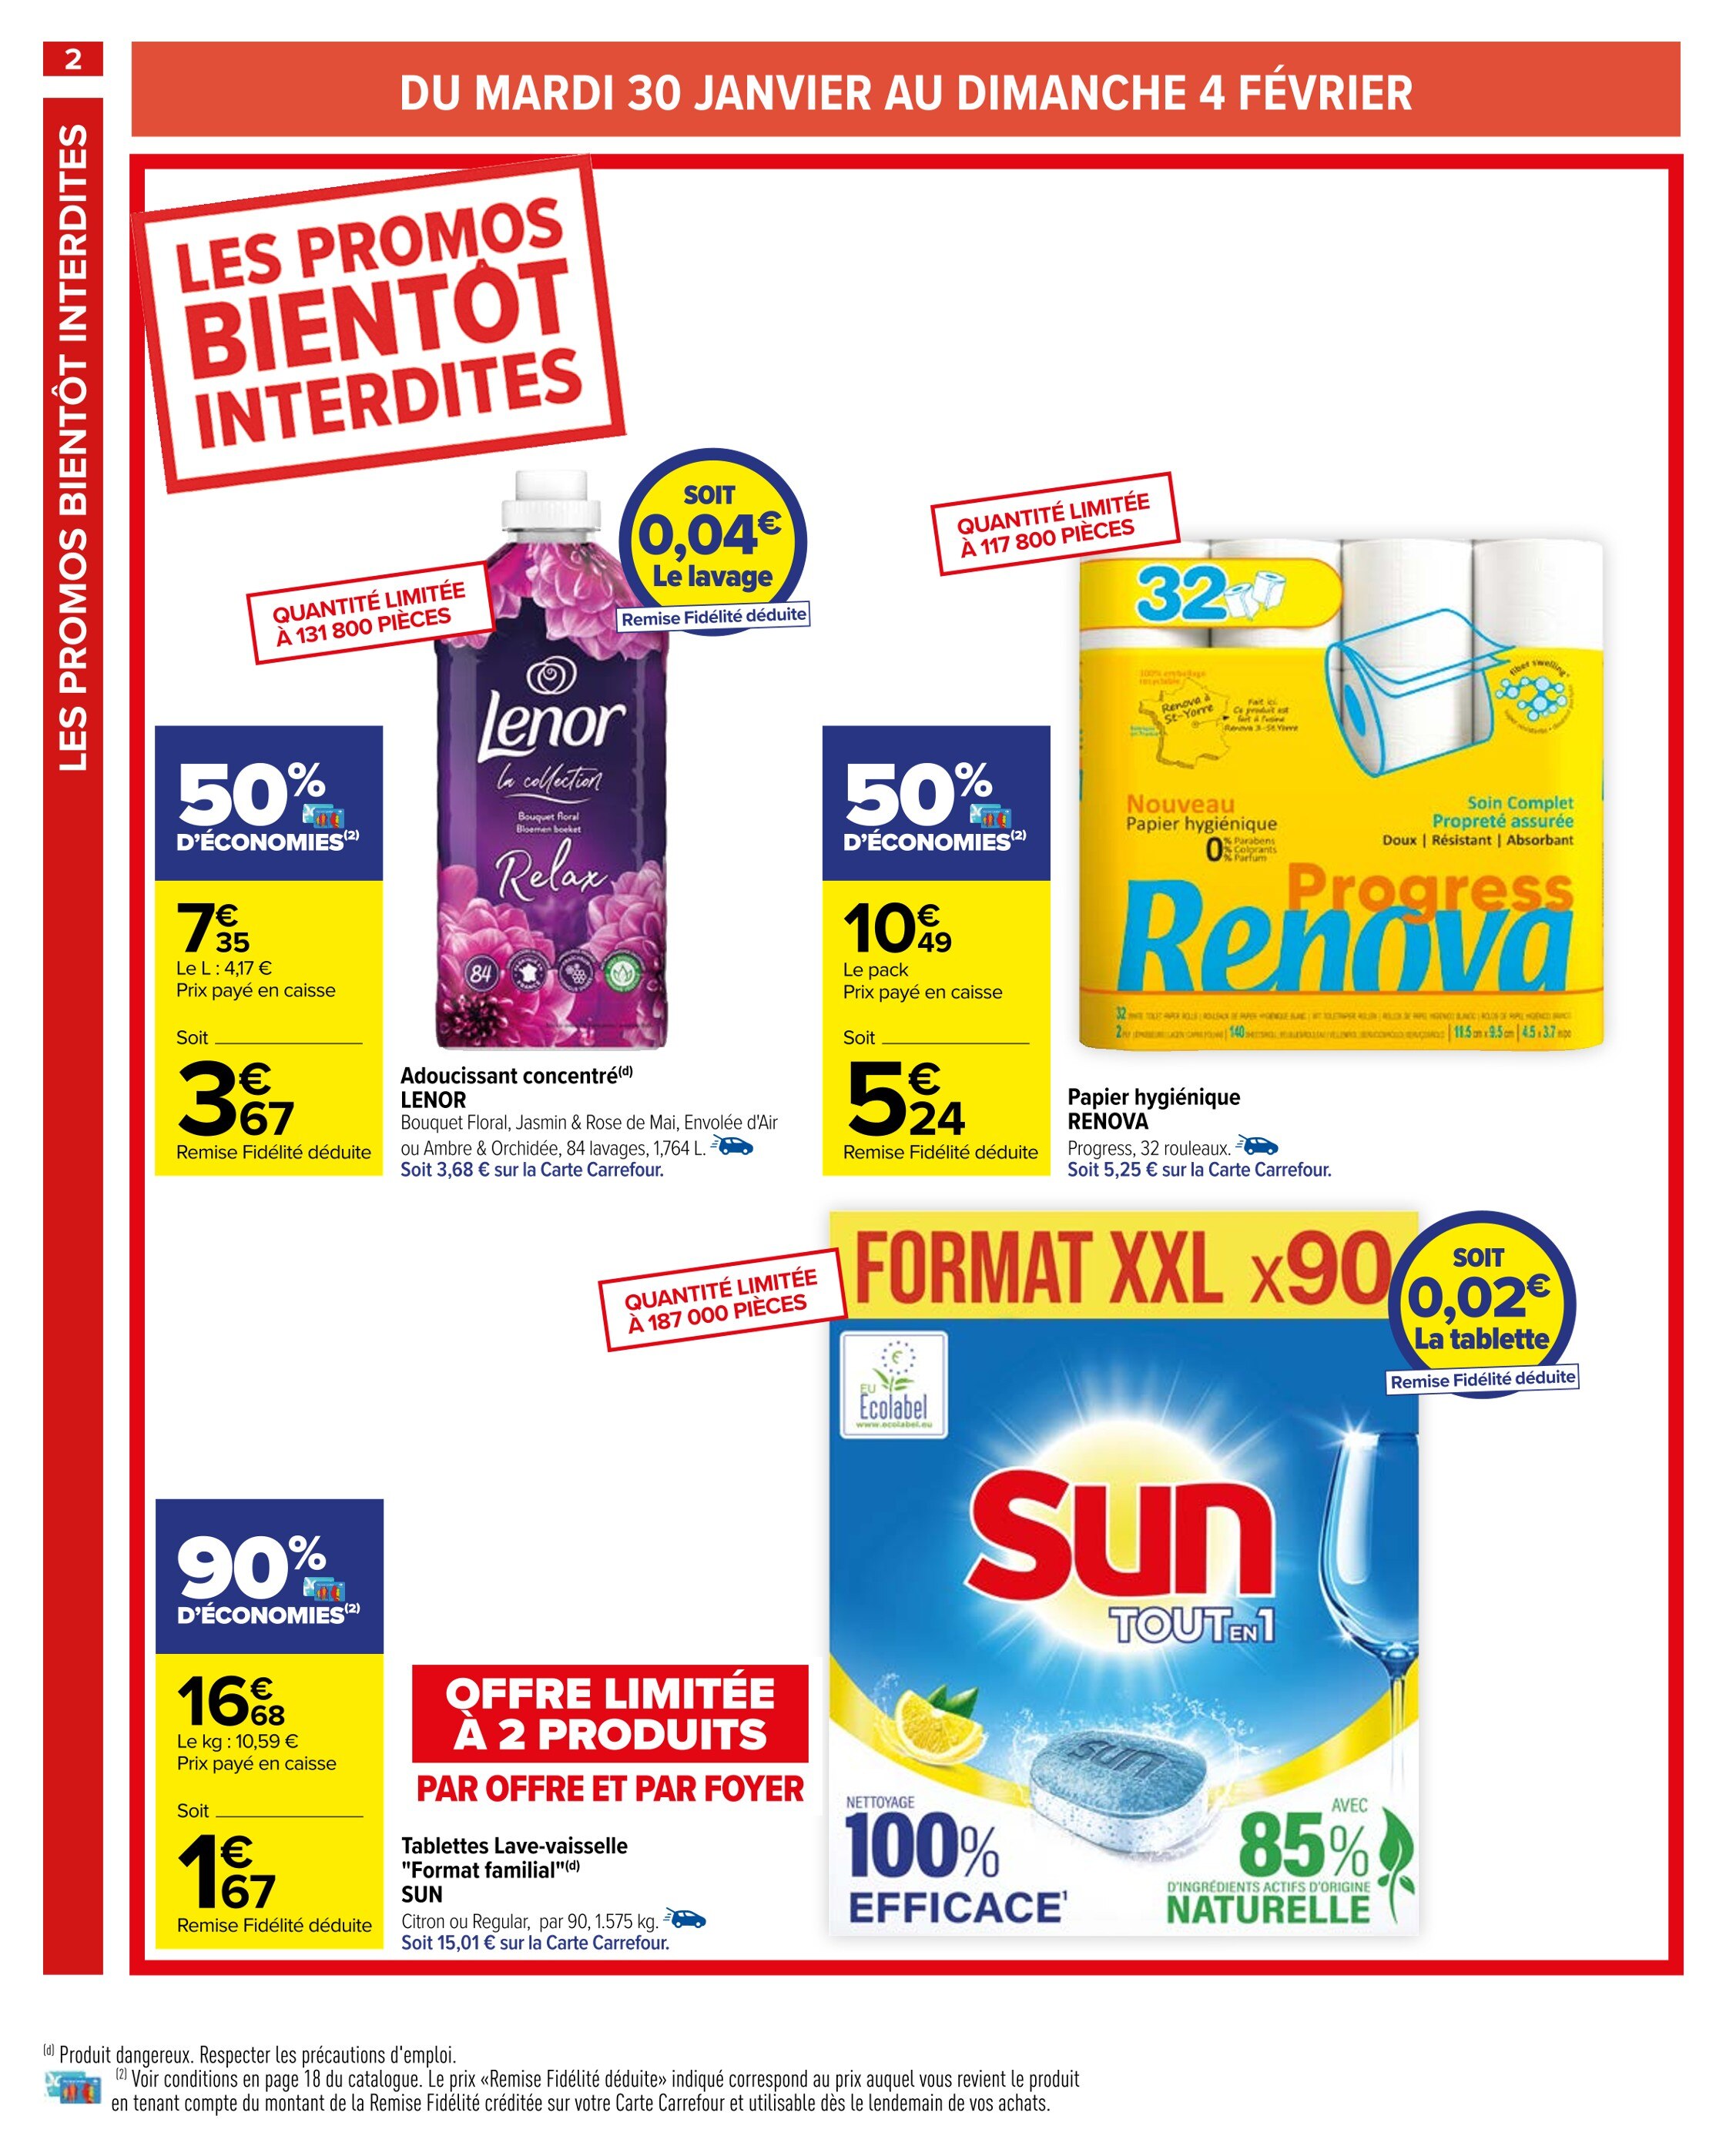 Lenor Carrefour ᐅ Promos et prix dans le catalogue de la semaine